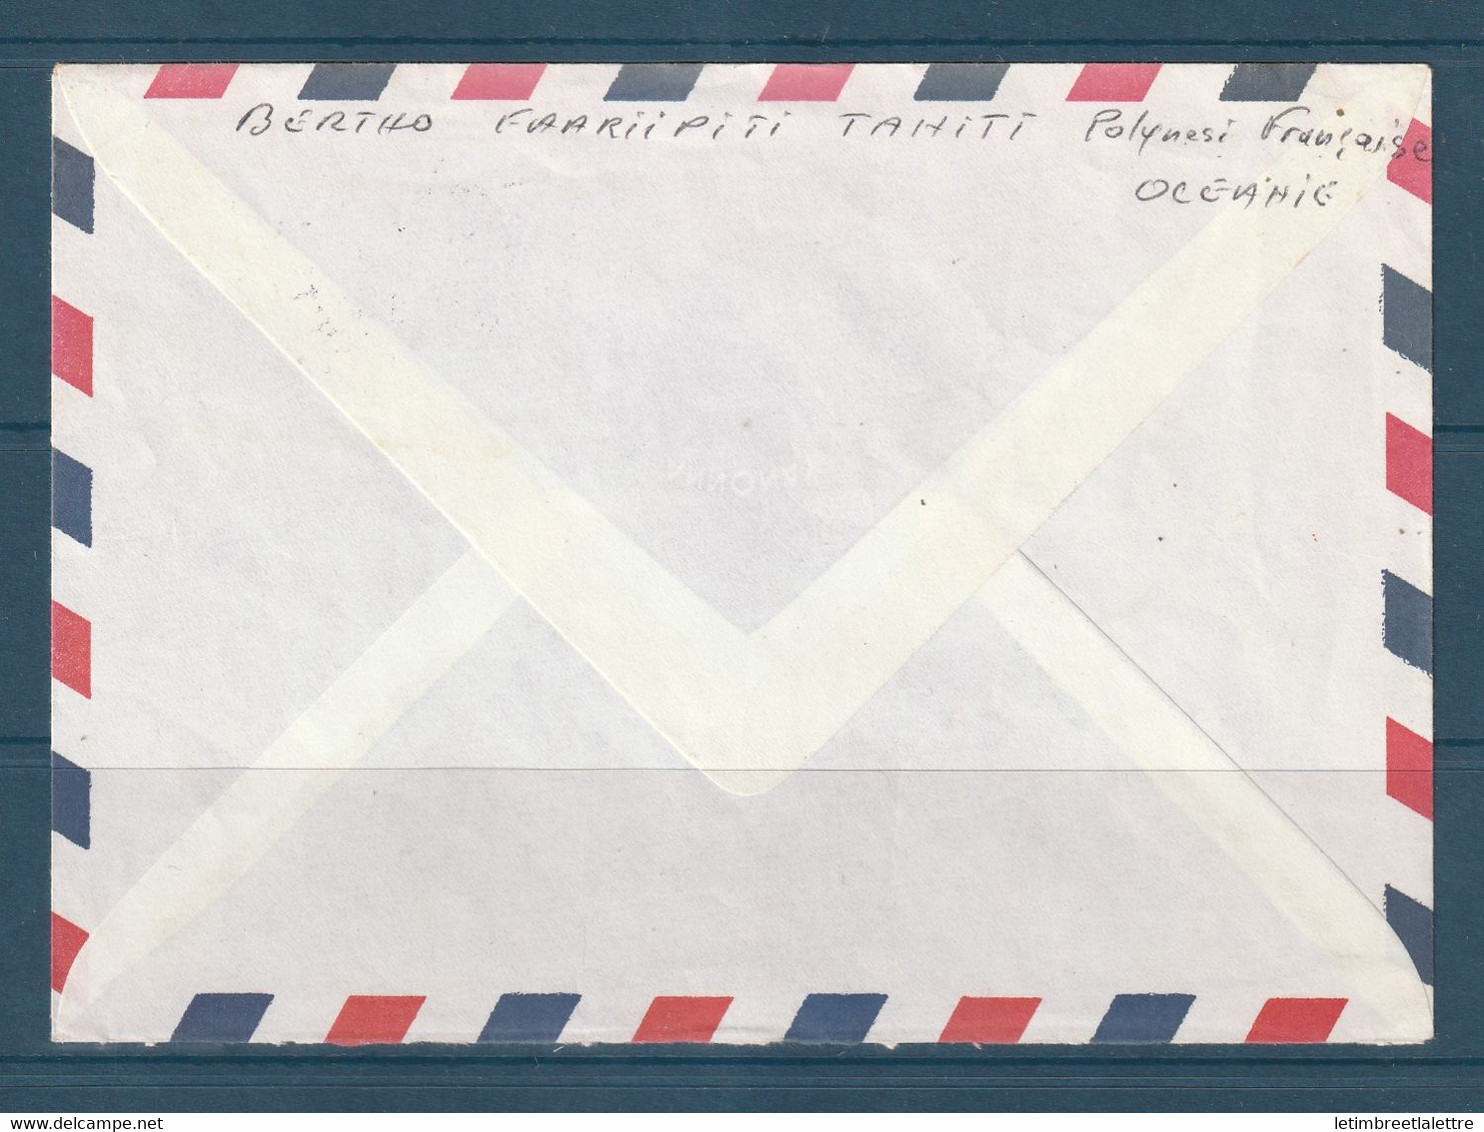 ⭐ Polynésie - Poste Aérienne - YT N° 157 - Enveloppe Décorée De Tahiti ( Pirae ) Pour La France - 1981 ⭐ - Brieven En Documenten